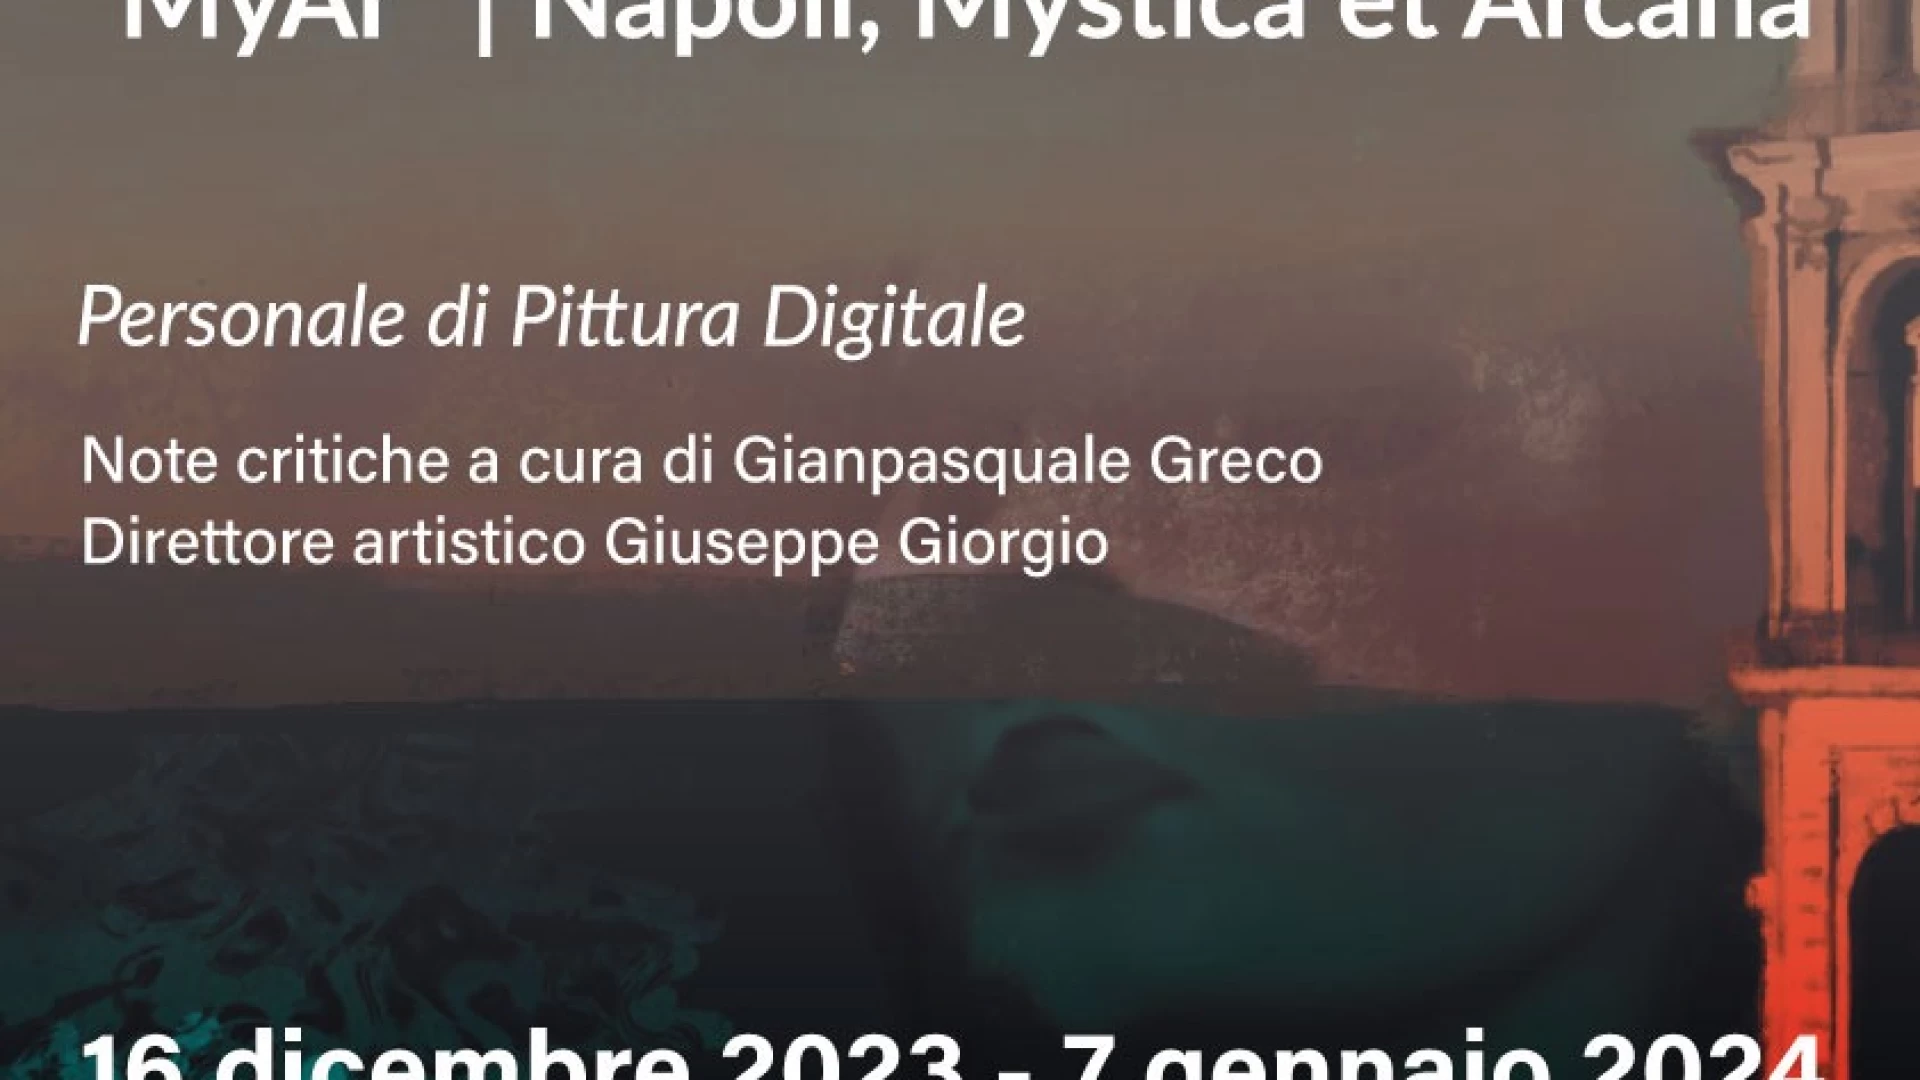 MyAr”| Napoli, Mystica et Arcana, personale di Pittura Digitale della digital artist Mila Maraniello a Castel di Sangro dal 16 dicembre al 7 gennaio.